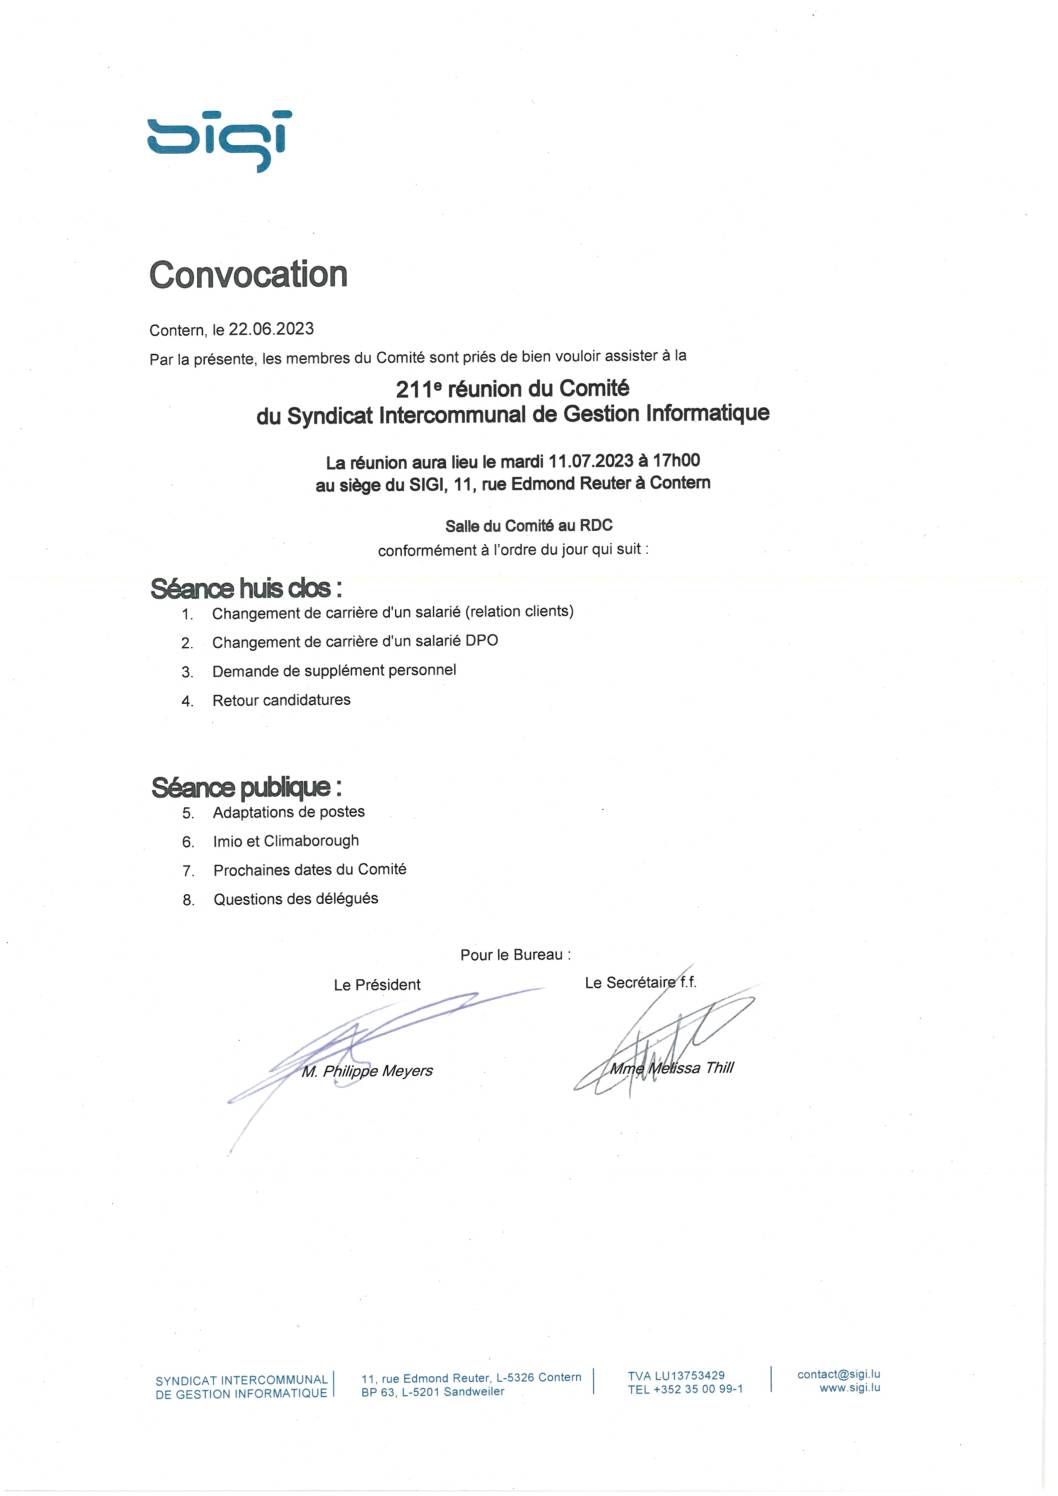 2023.06.28_Convocation comité SIGI - Réunion du 11.07.2023